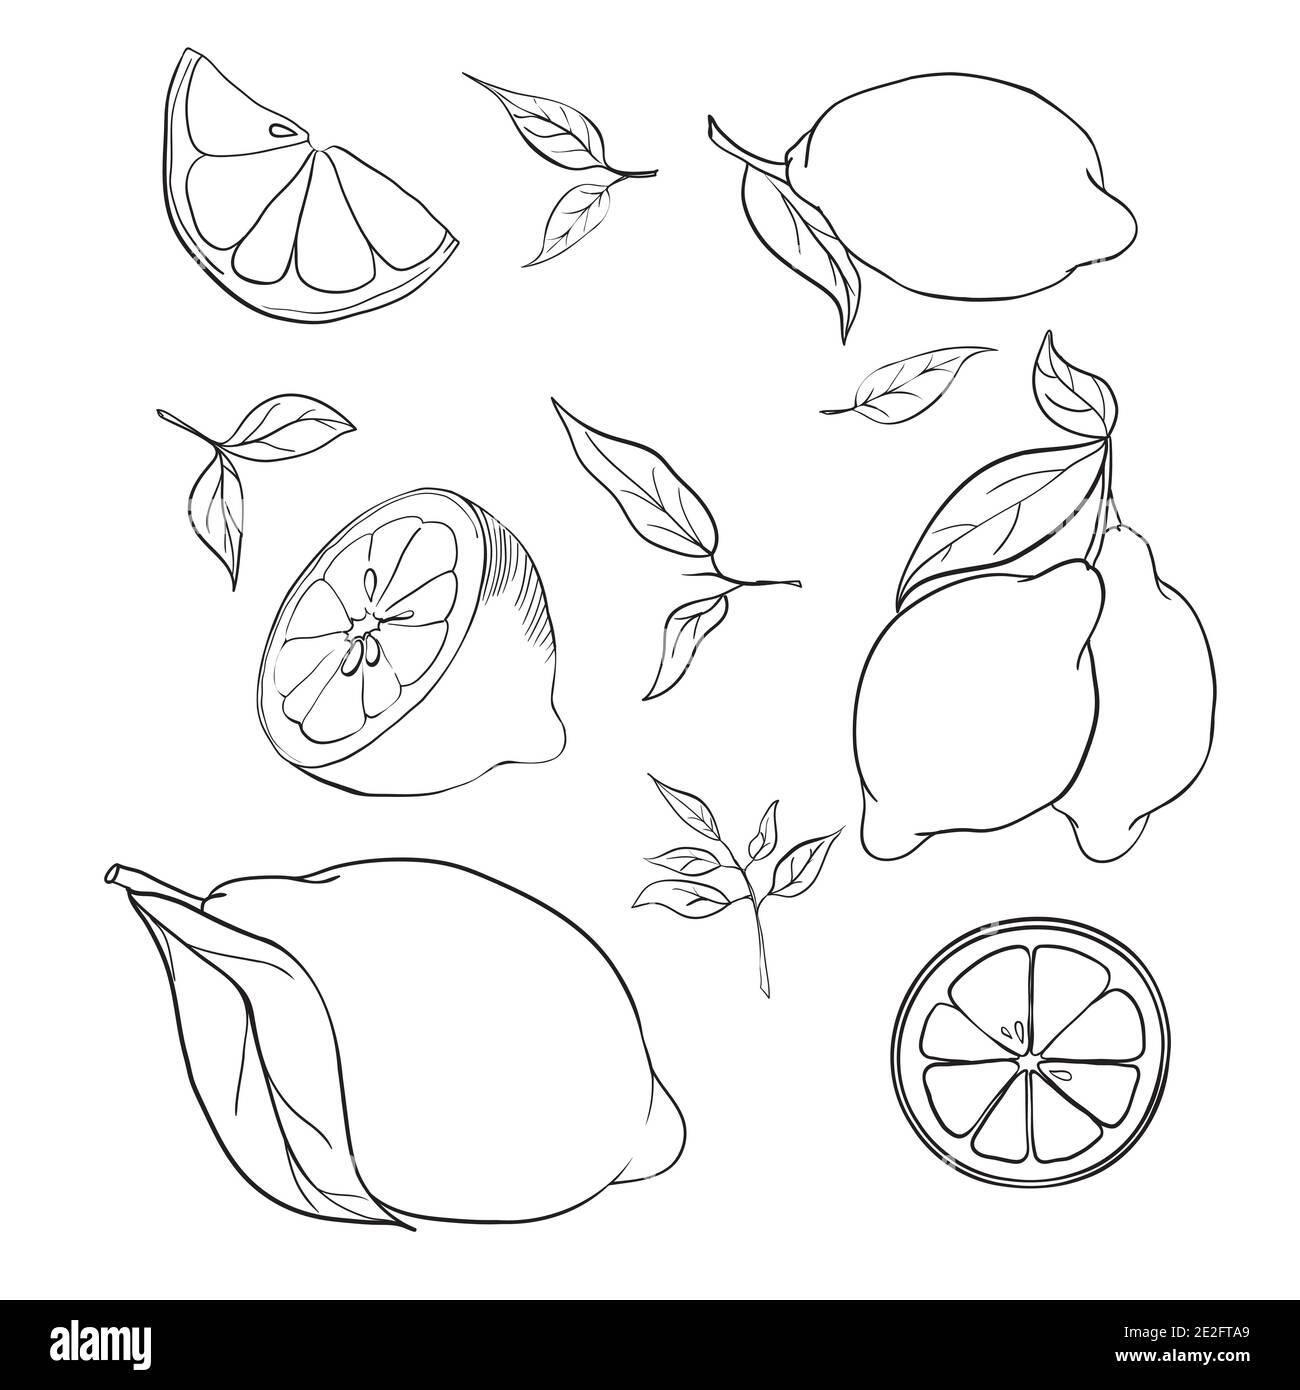 Handgezeichnete Vektor-Illustration - Sammlungen von Zitronen. Blütenpflanze mit Blättern Stock Vektor